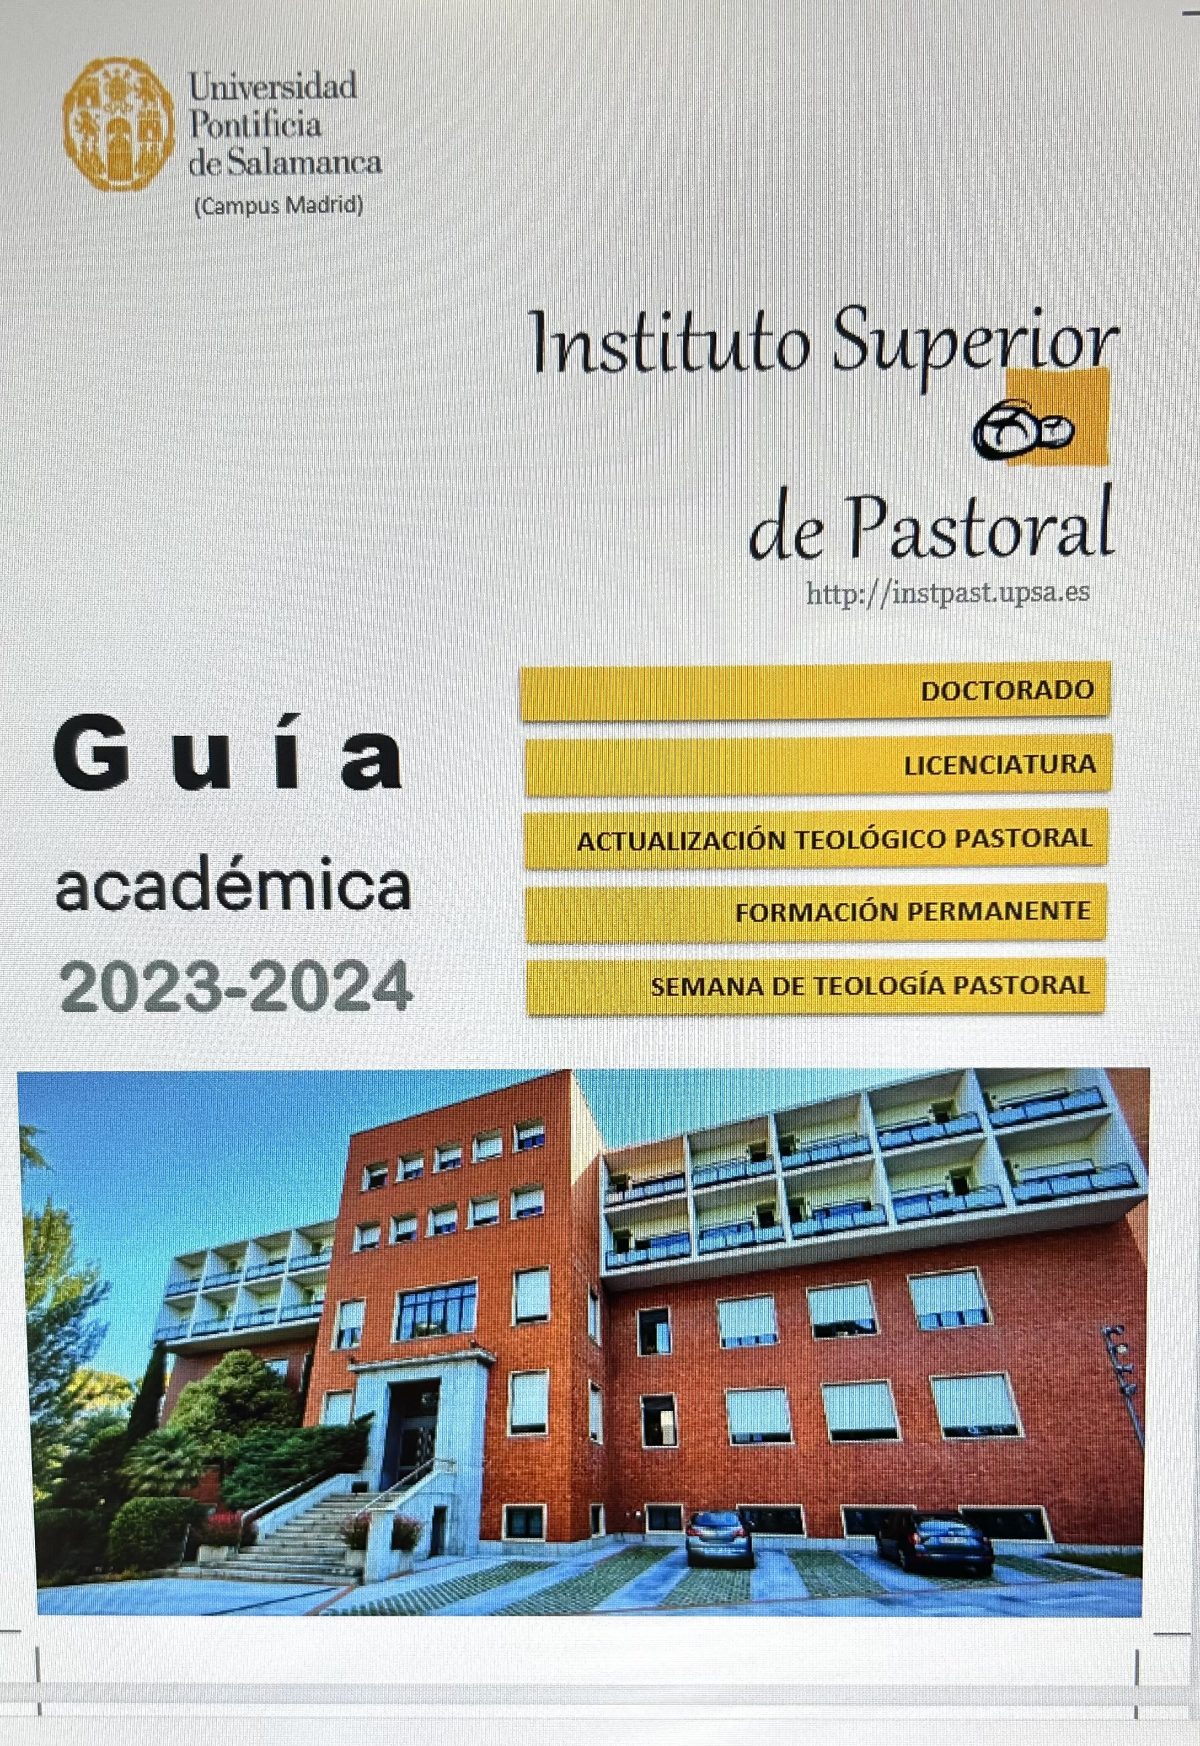 Instituto de Pastoral León XIII